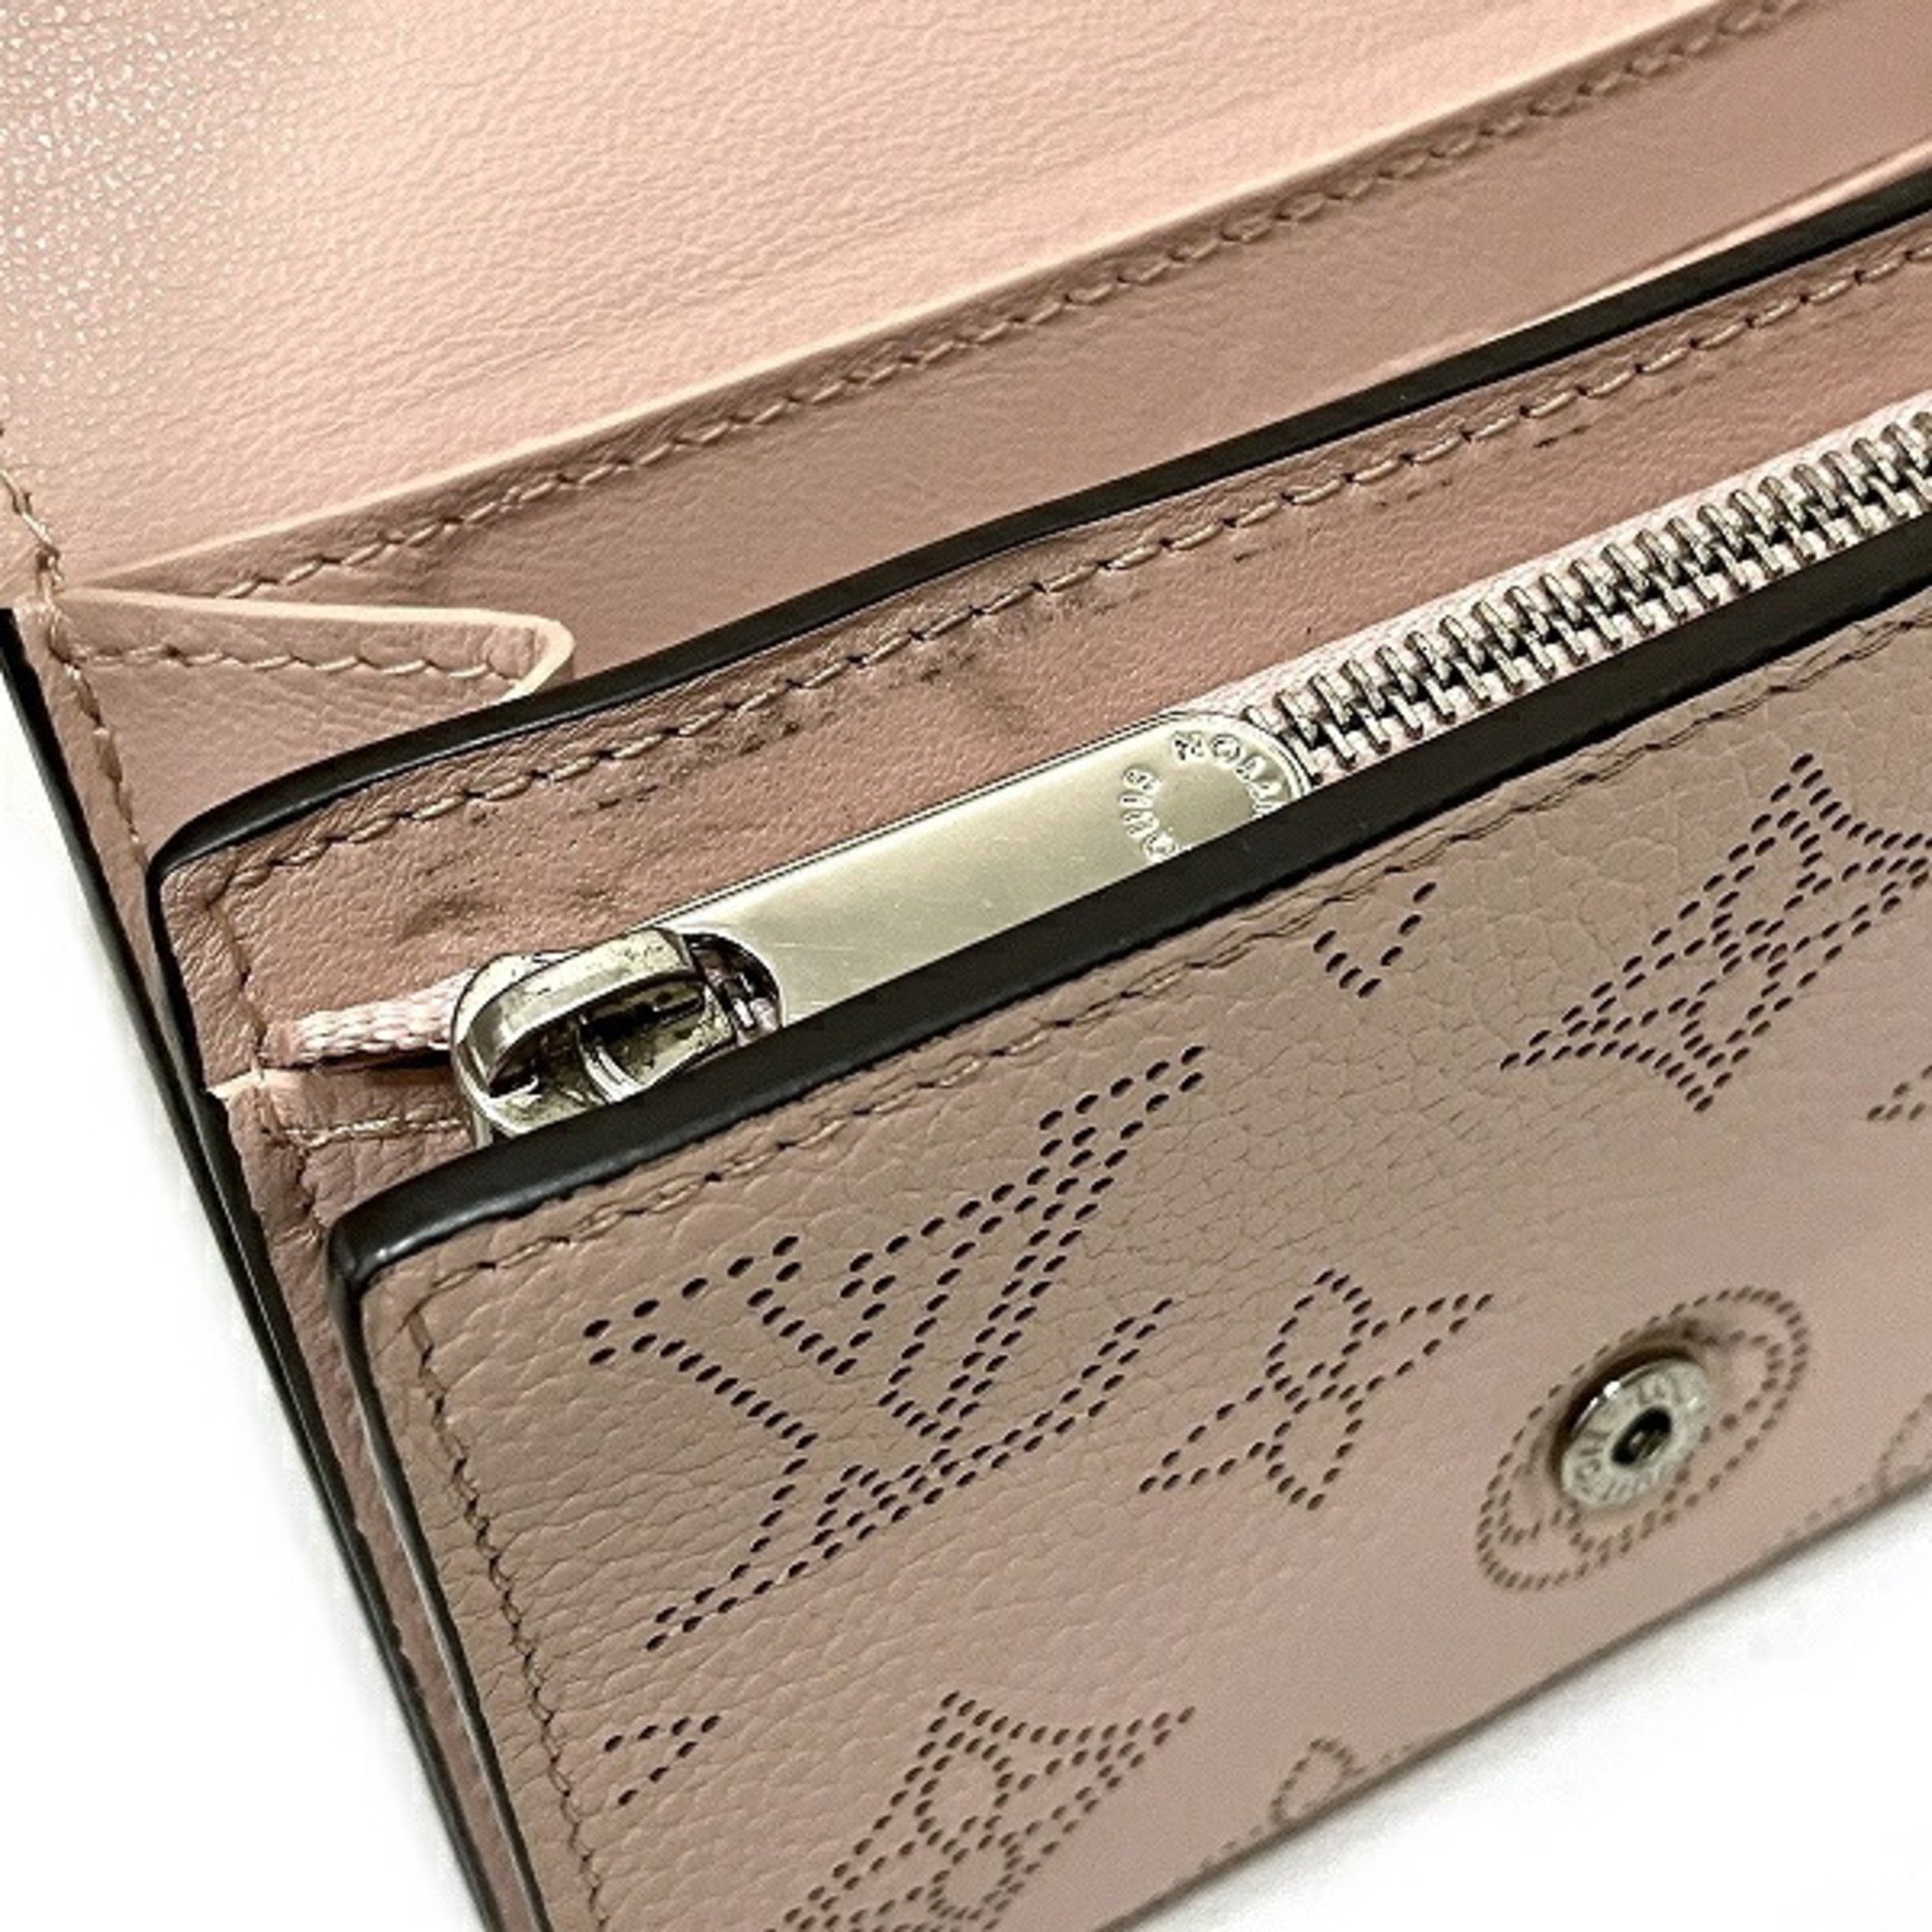 Louis Vuitton Mahina Portefeuille Iris Compact M62542 Initial Wallet Bifold Women's